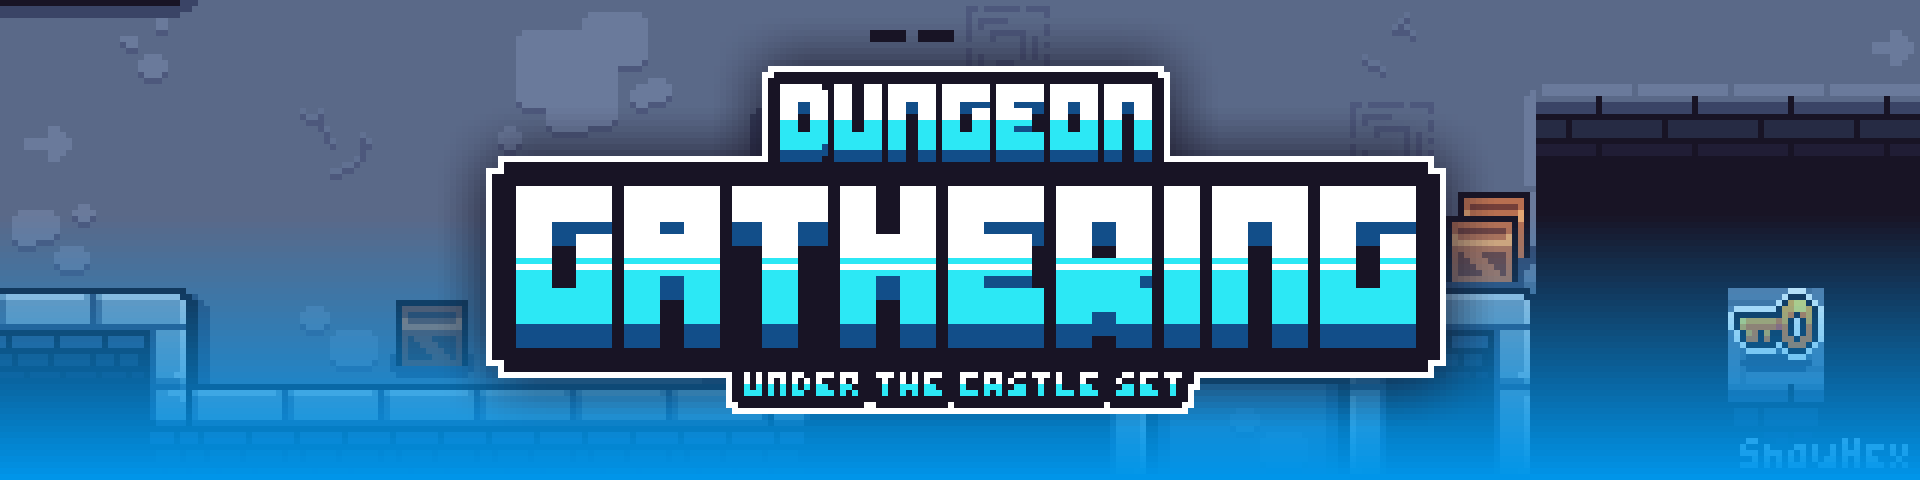 Dungeon Gathering - Under The Castle Set (16x16) + Updates